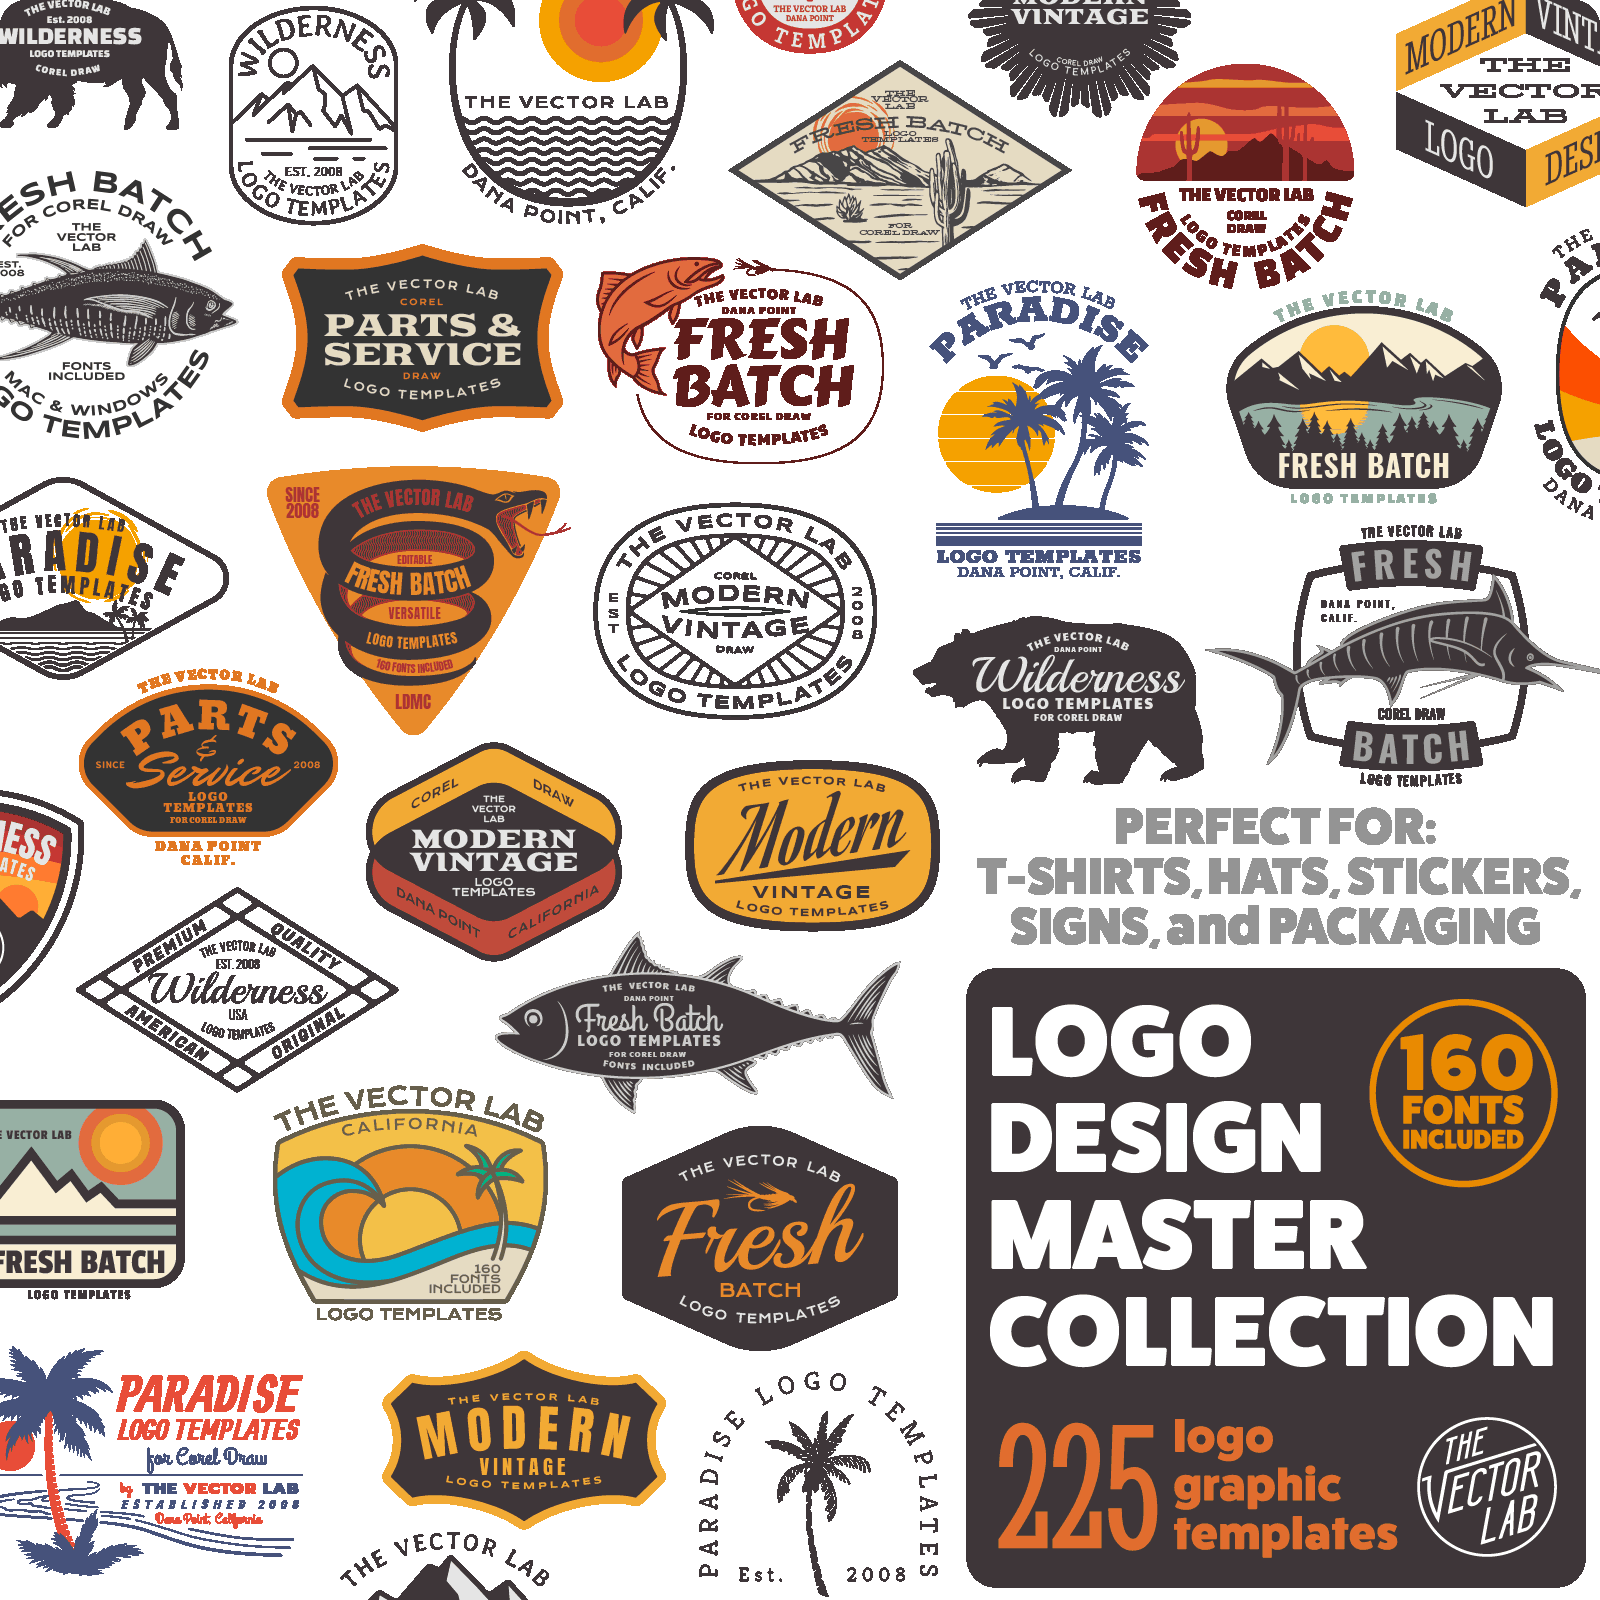 Logo Design Master Collection